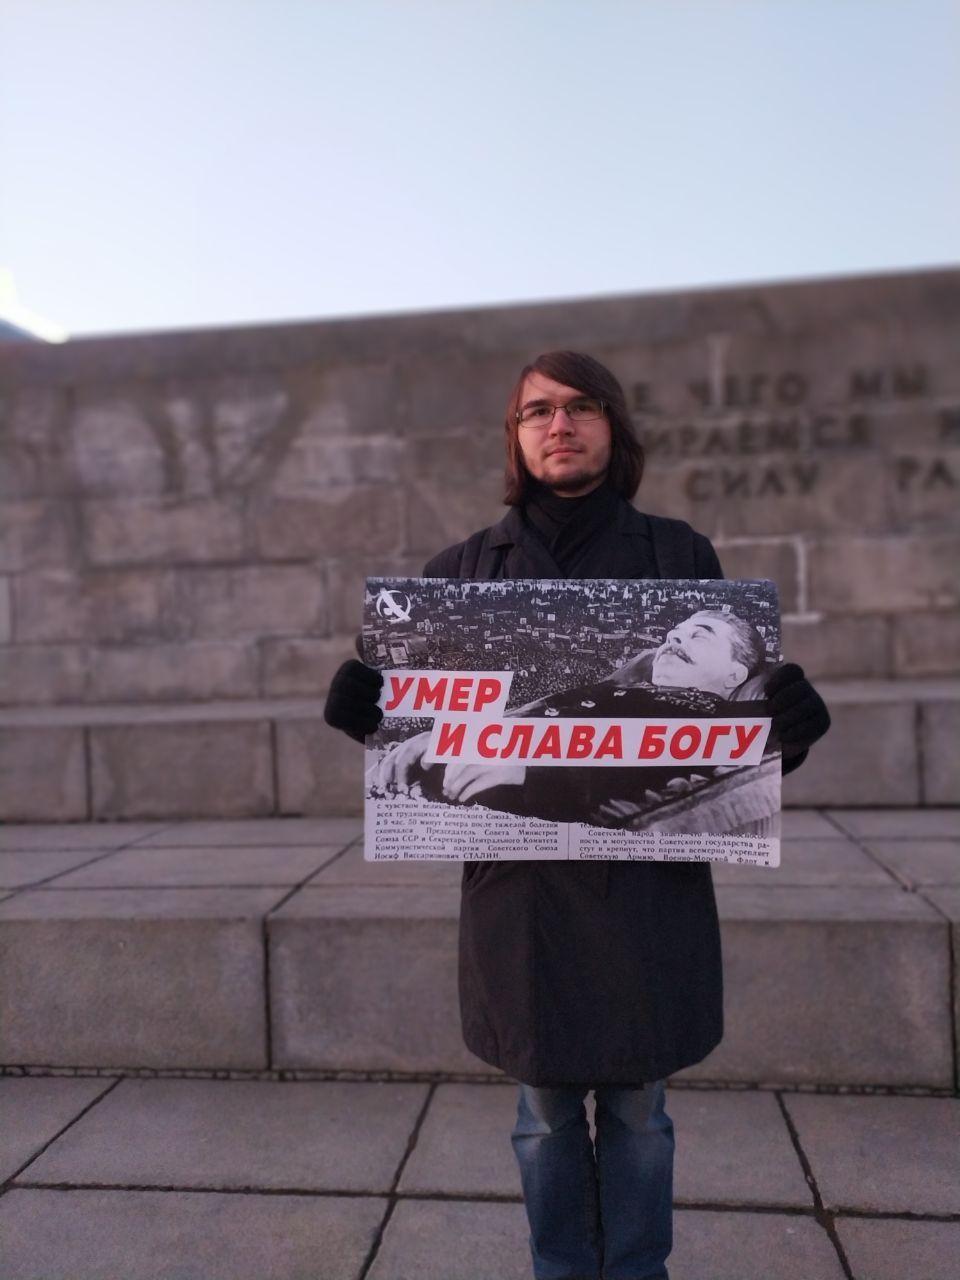 Активист с плакатом "Умер и слава богу" у памятника Ленину